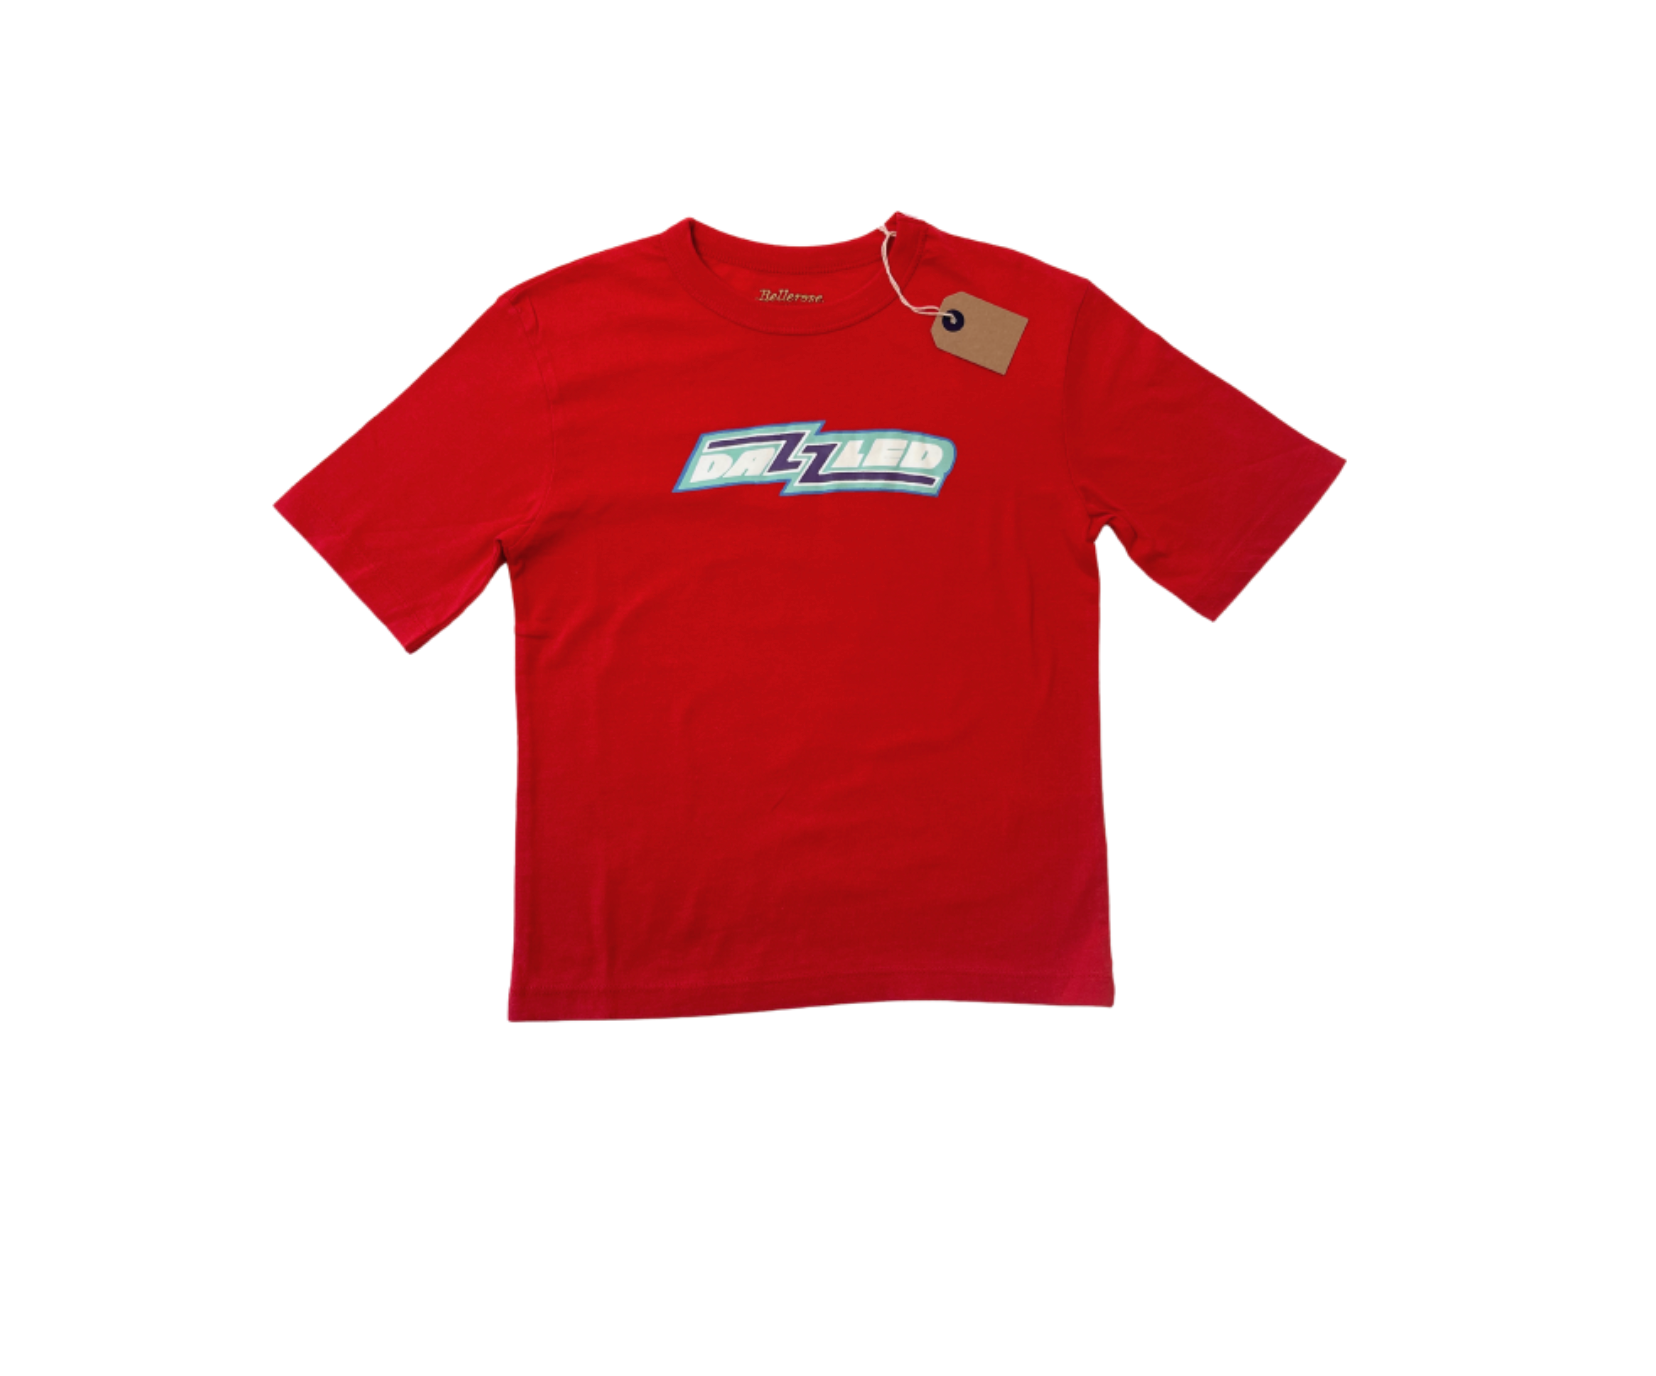 BELLEROSE - T-shirt rouge "Dazzled" - 8 ans